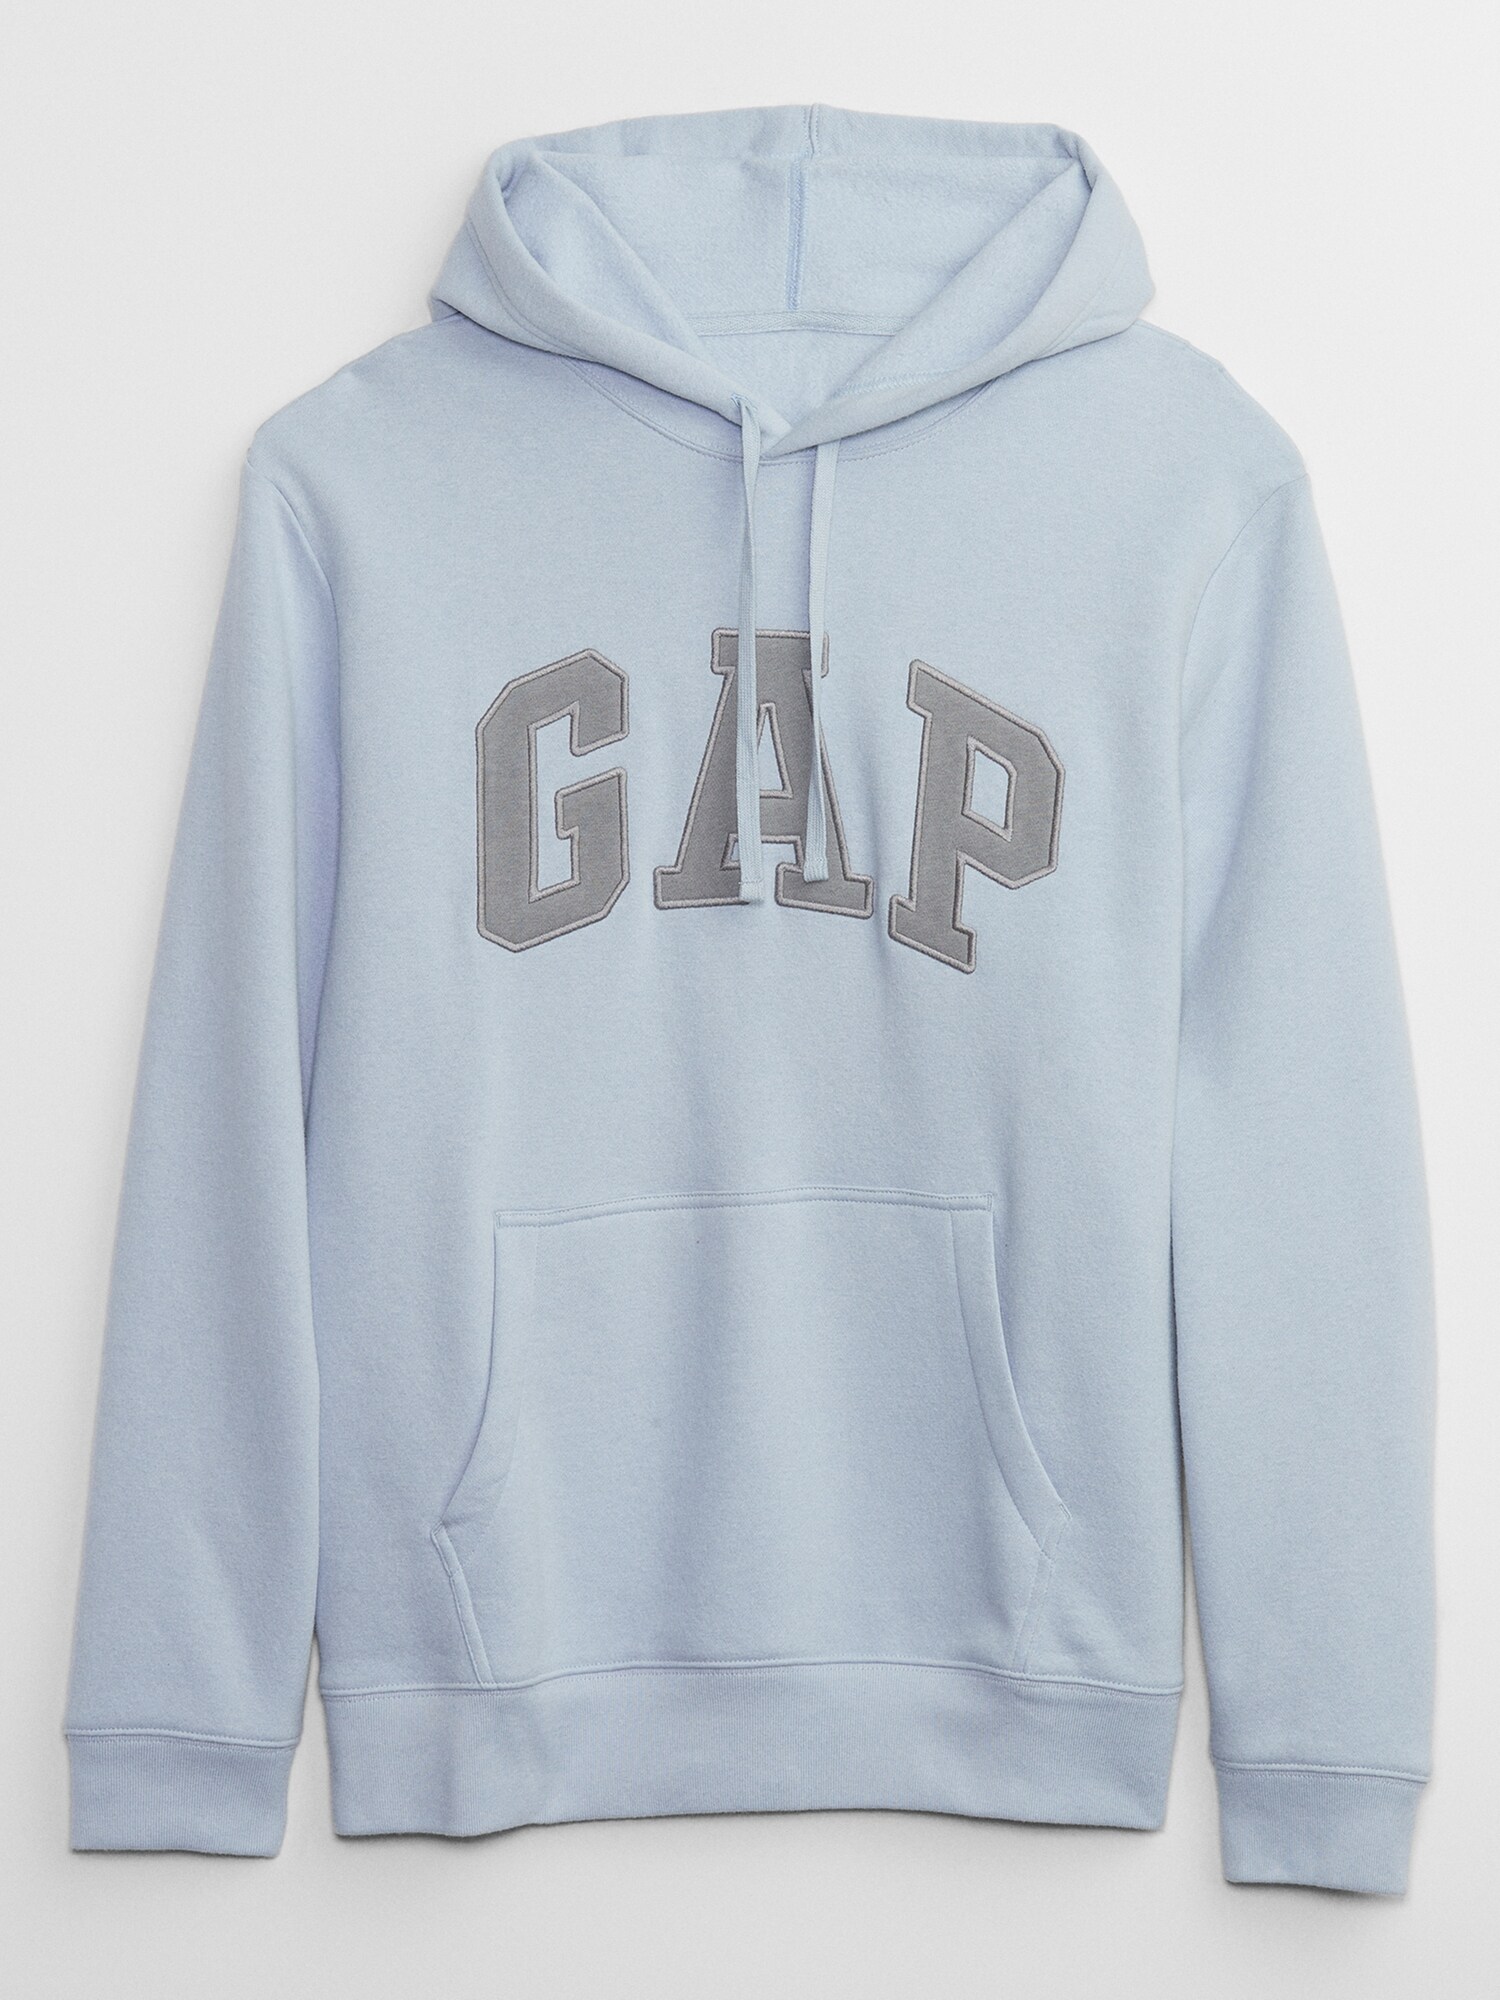 Gap公式オンラインストア | GAPロゴ プルオーバーパーカー(ユニセックス)